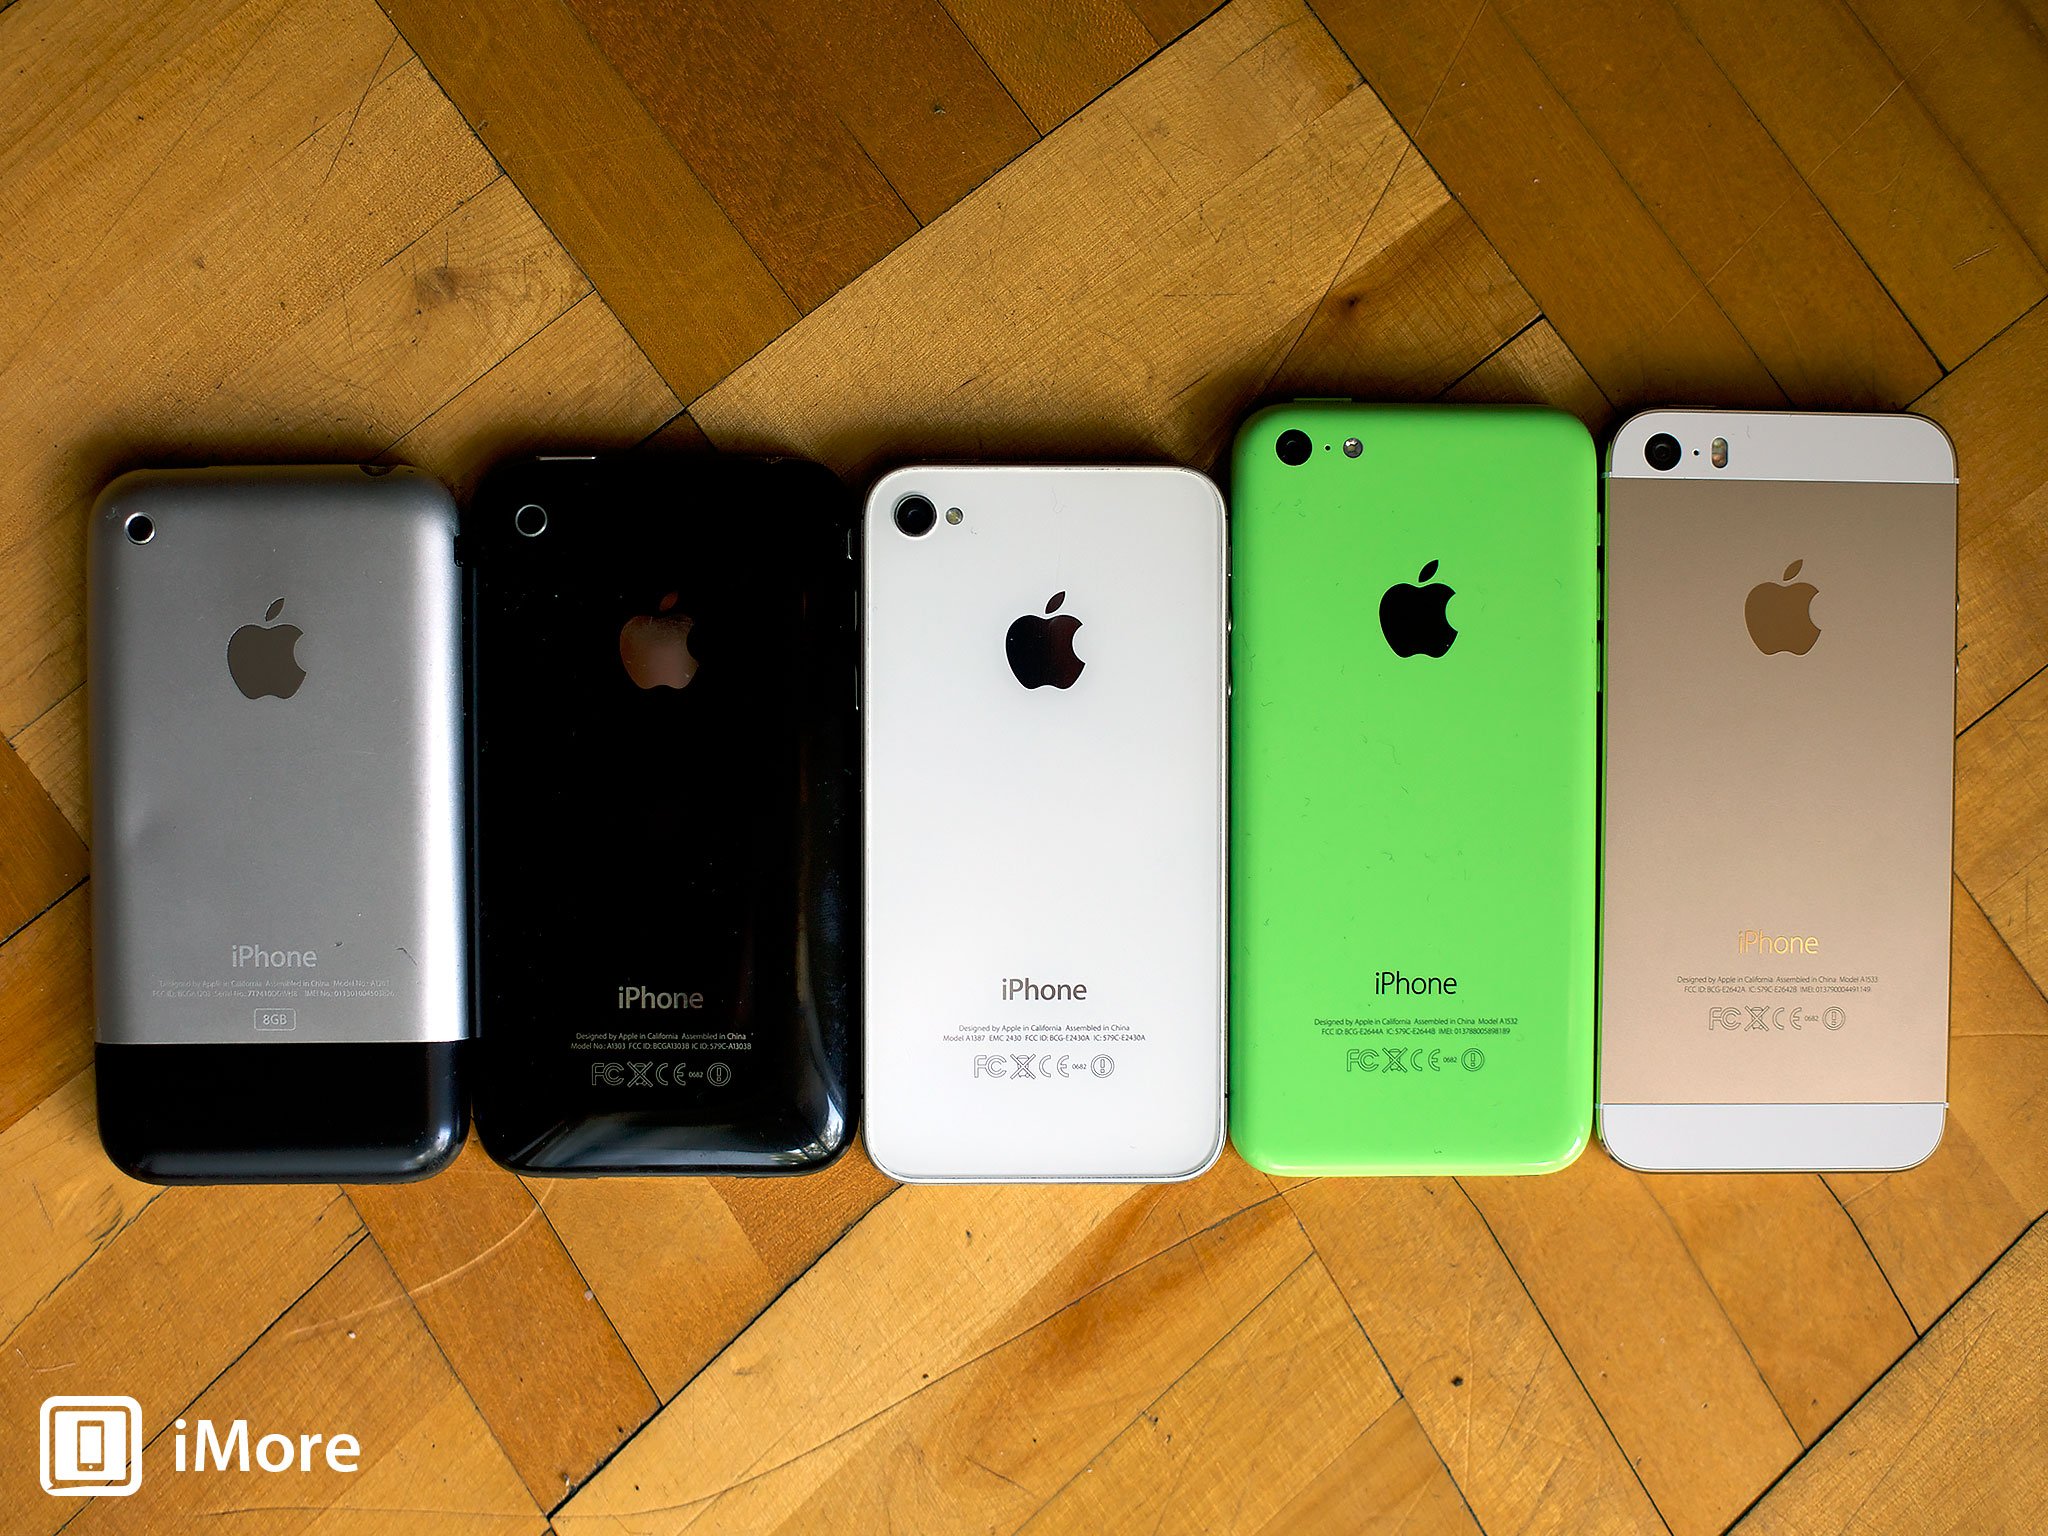 iPhone, iPhone 3GS, iPhone 4S, iPhone 5c, iPhone 5s